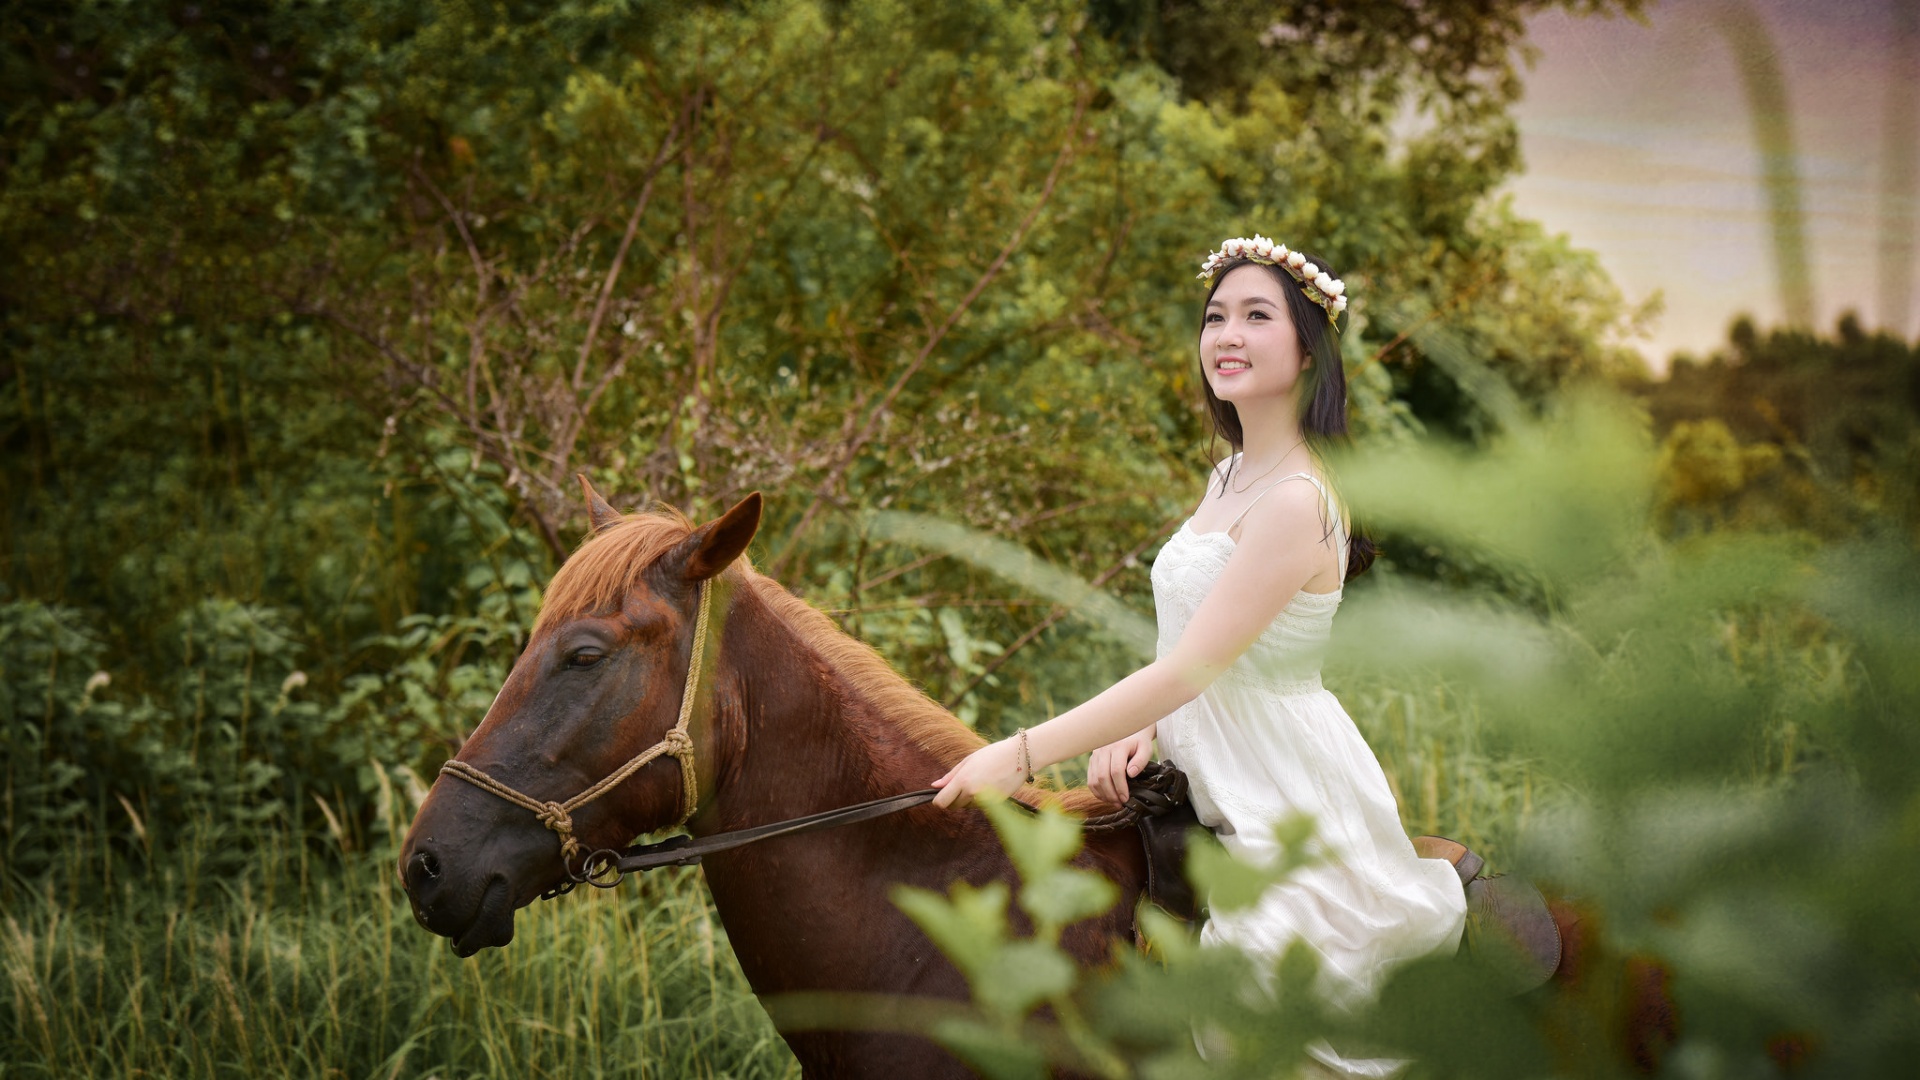 骑着马儿的可爱女孩,花环,白色裙子,美女桌面壁纸